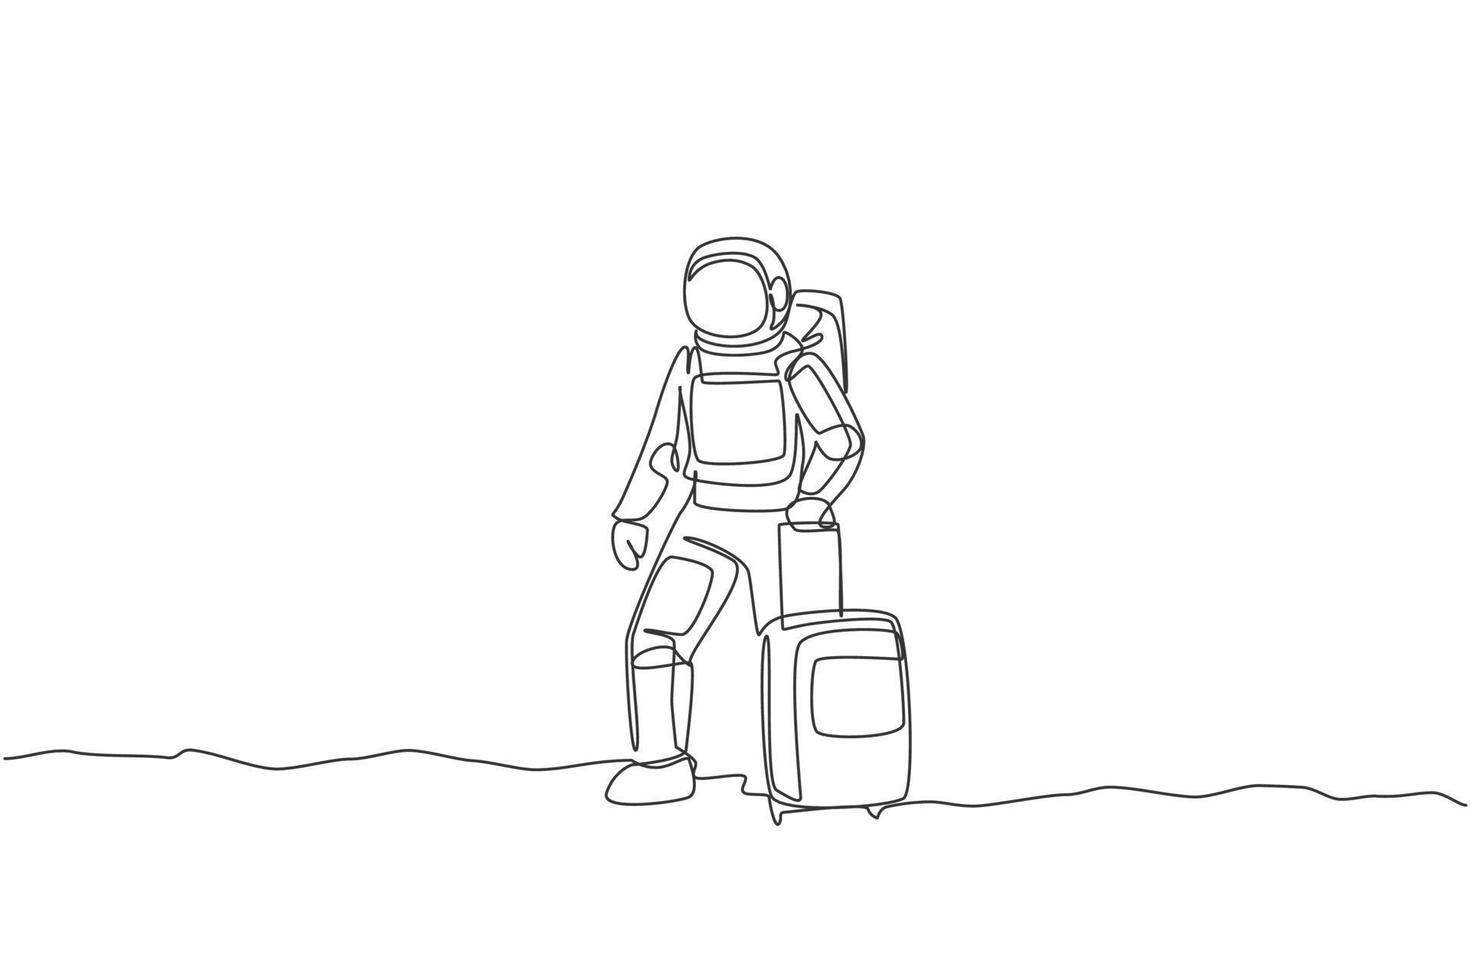 enkele doorlopende lijntekening van een jonge astronaut die een bagagetas draagt, wil op het maanoppervlak reizen. ruimte man kosmische melkweg concept. trendy één lijn tekenen ontwerp grafische vectorillustratie vector